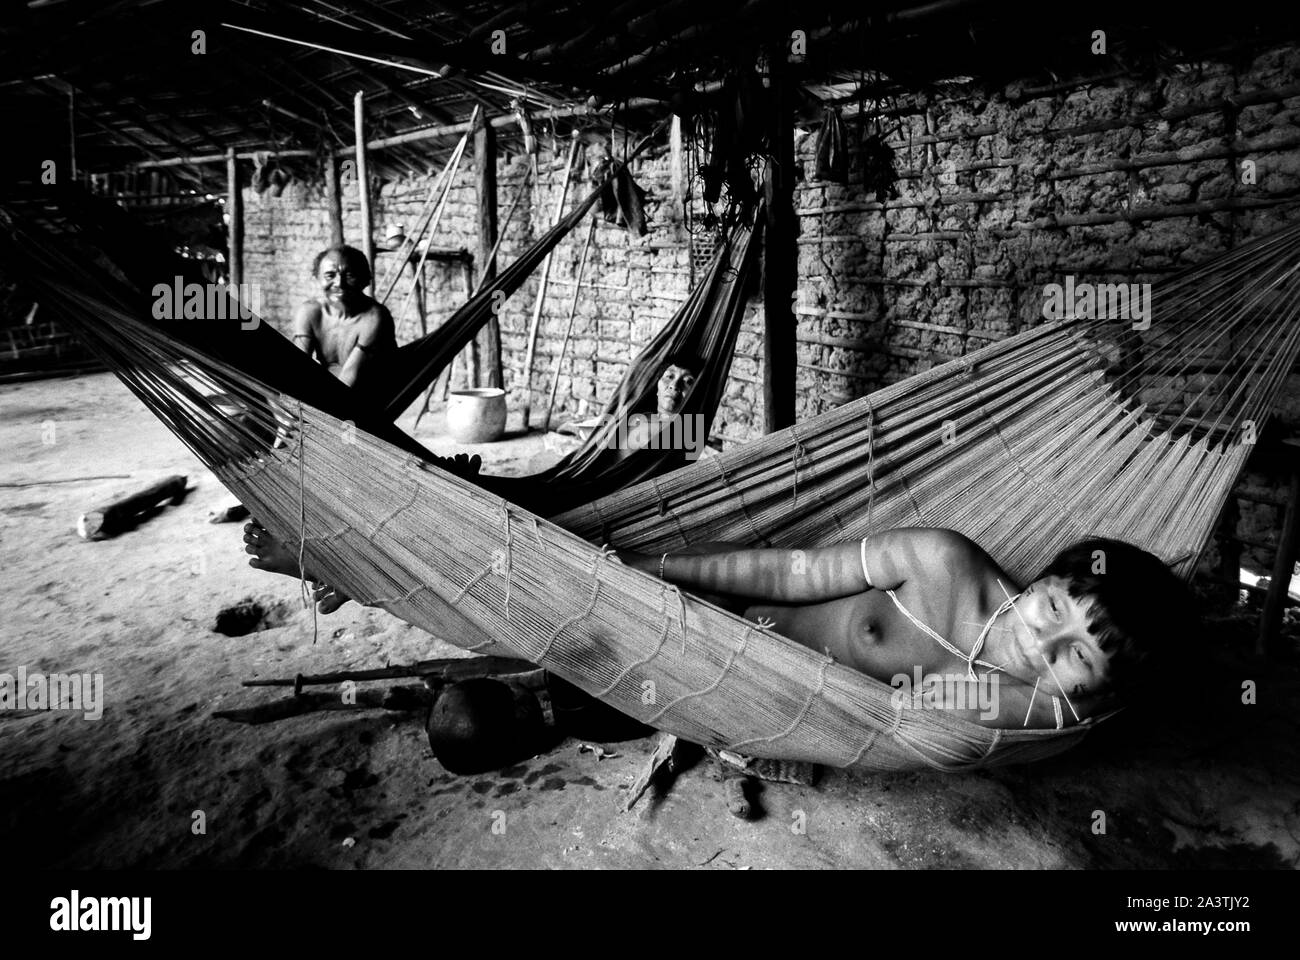 Brazil, Amazonia, Roraima: a family rests lying on the hammocks inside the Shabono. Stock Photo